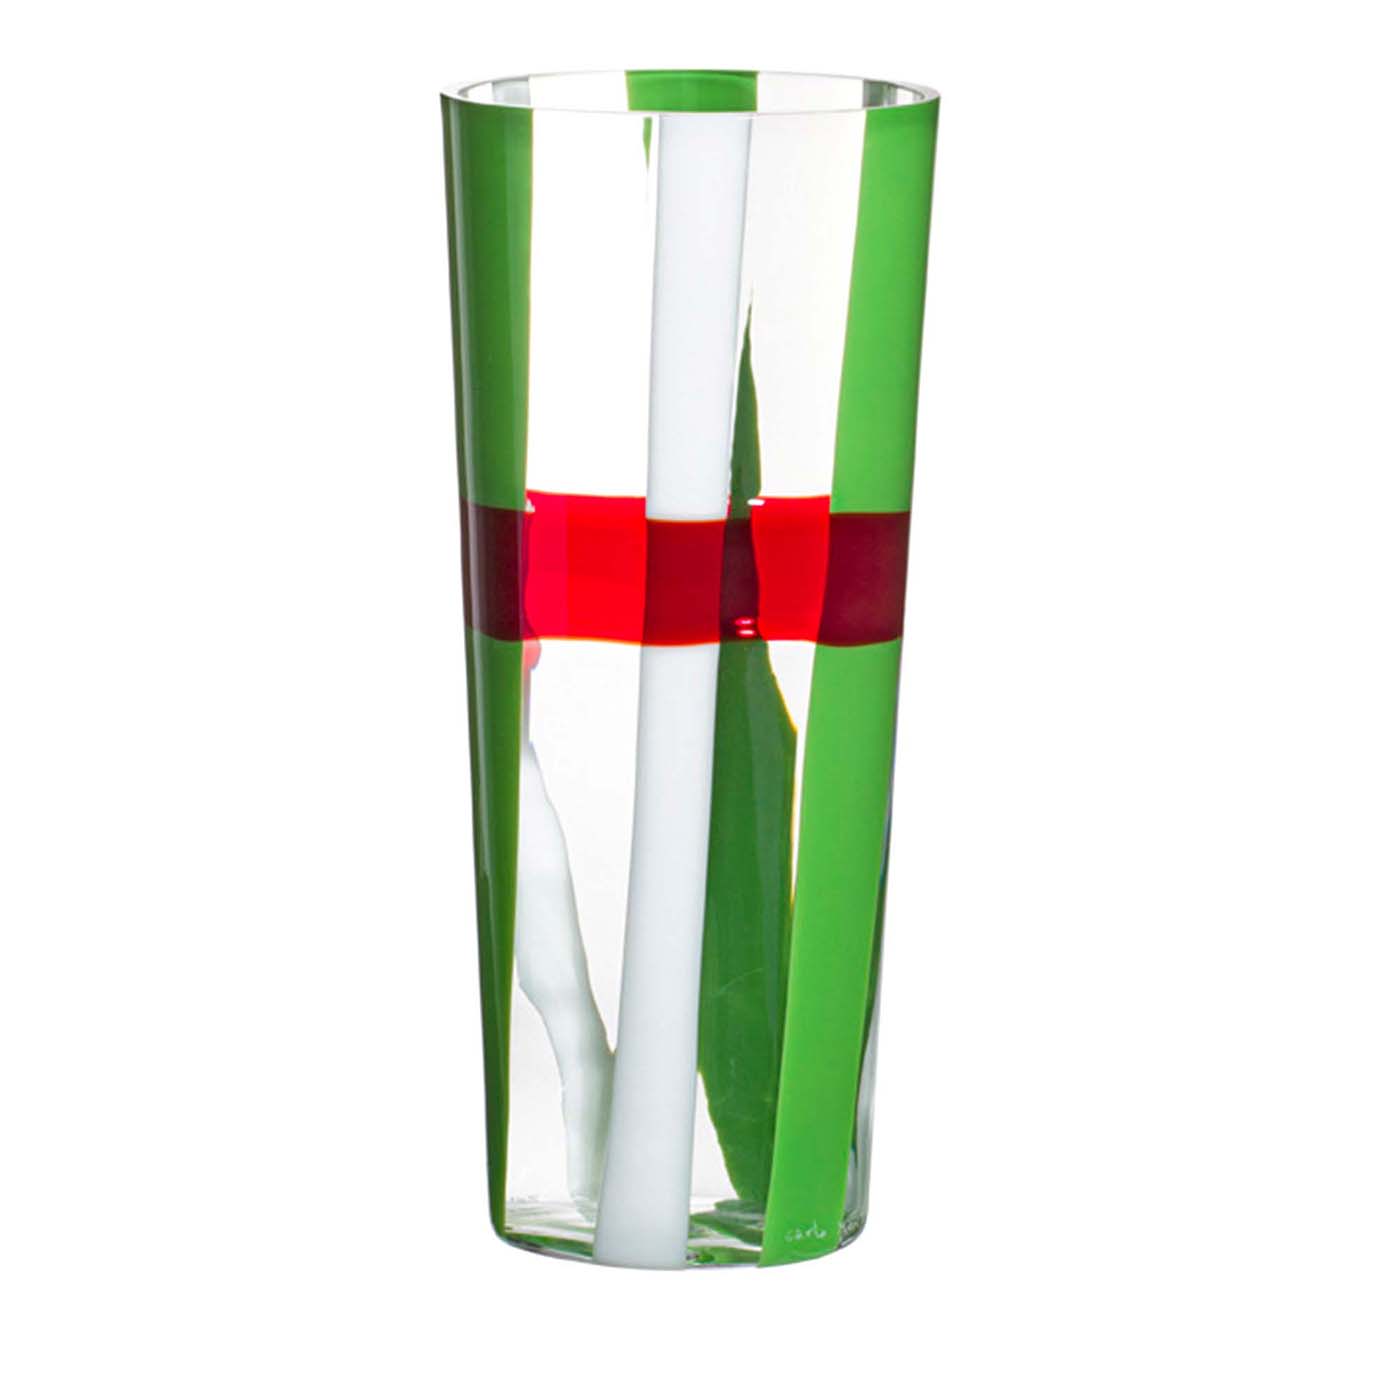 Troncocono Green/White/Red Stripes Vase by Carlo Moretti - Carlo Moretti